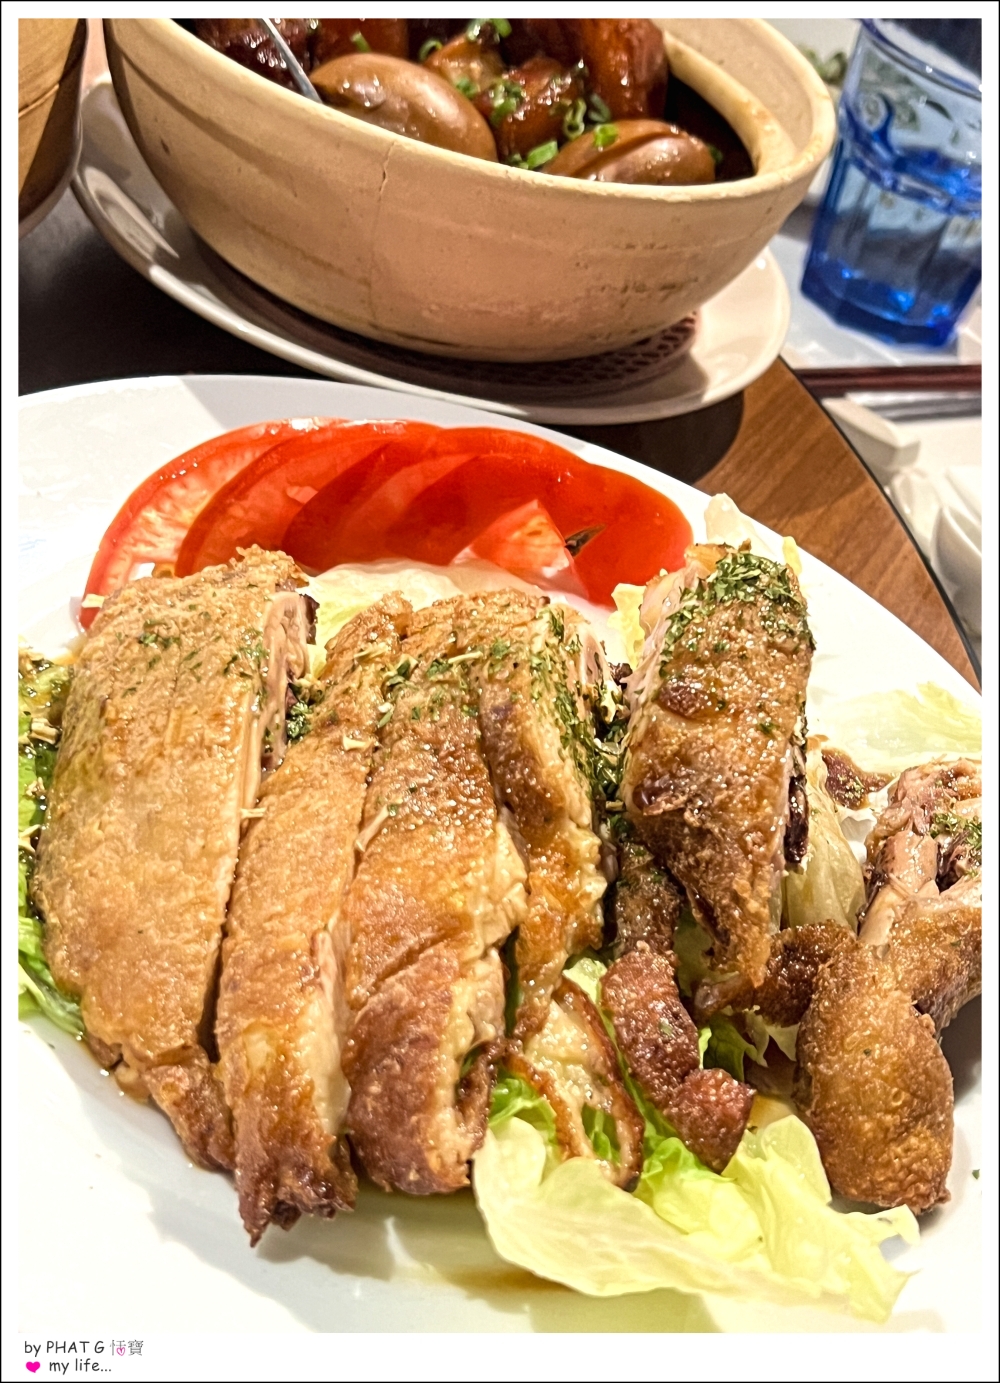 【❤ 美食】大安區安和路的精緻時尚美食上海料理- 葉公館滬菜